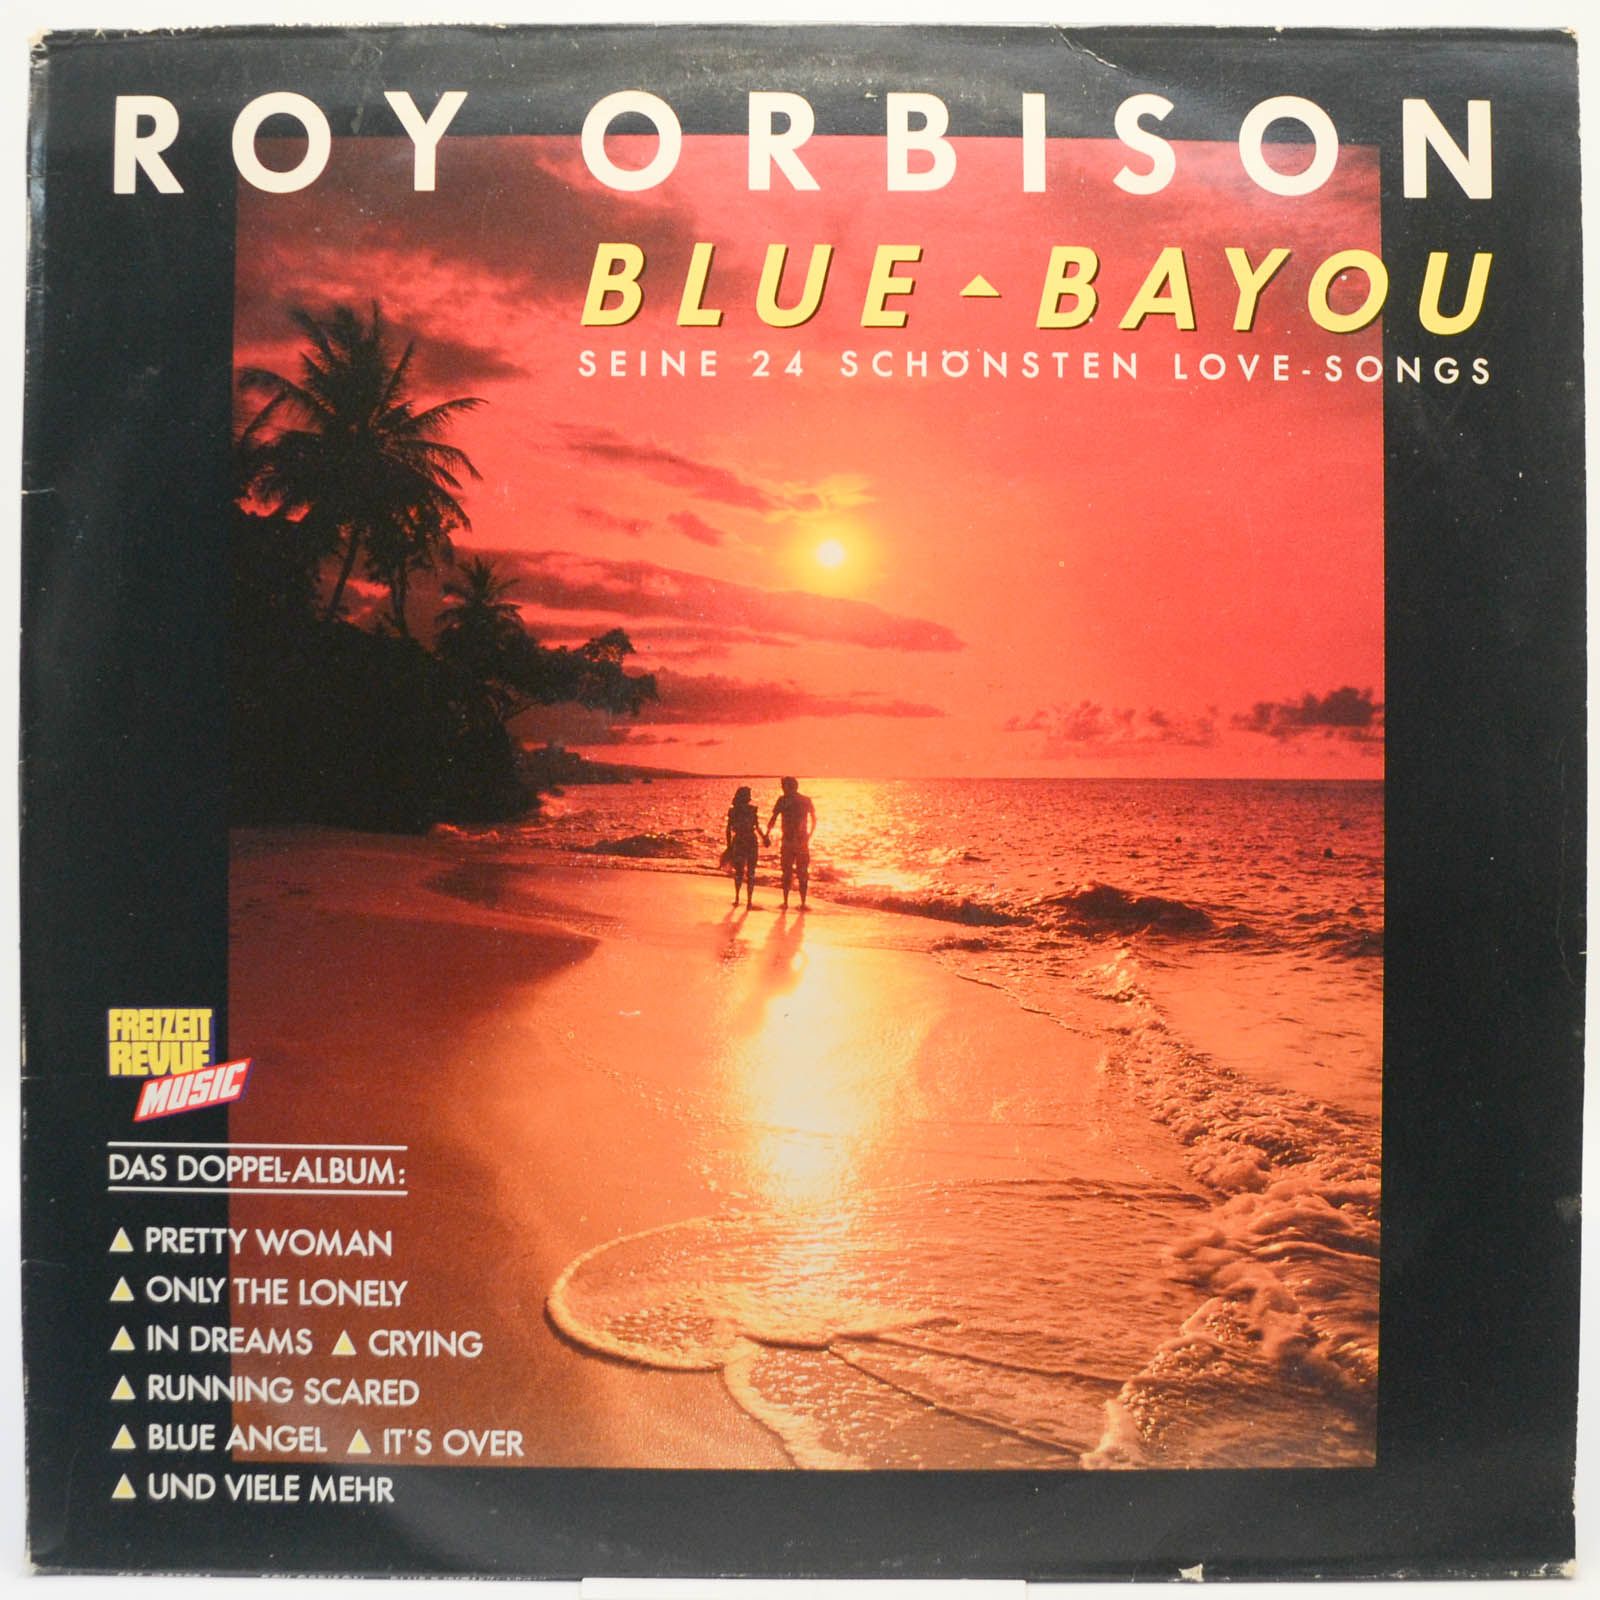 Roy Orbison — Blue Bayou (Seine 24 Schönsten Love-Songs) (2LP), 1989